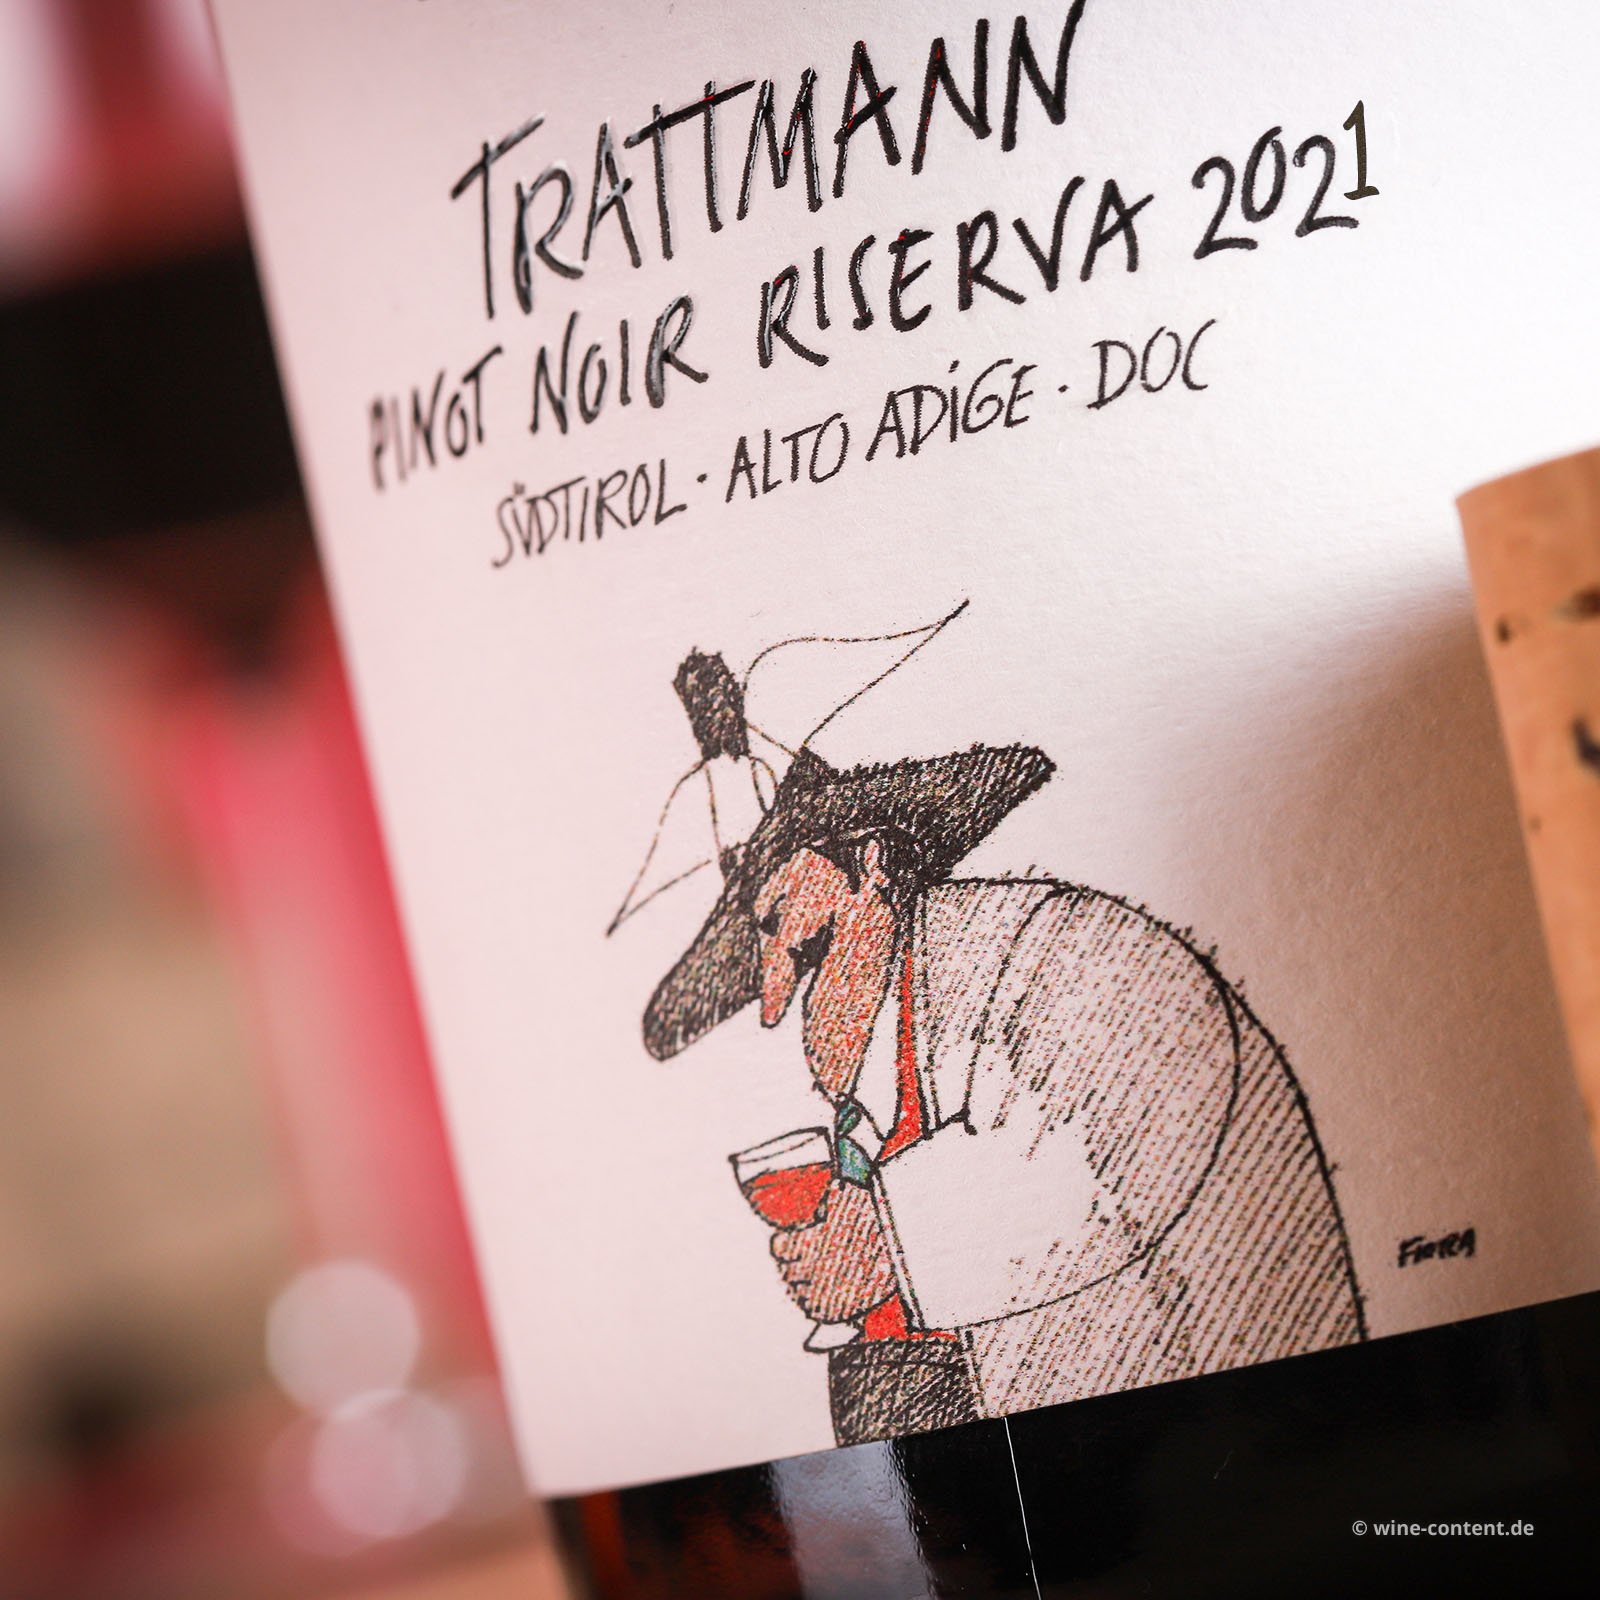 Pinot Noir Riserva 2021 Trattmann